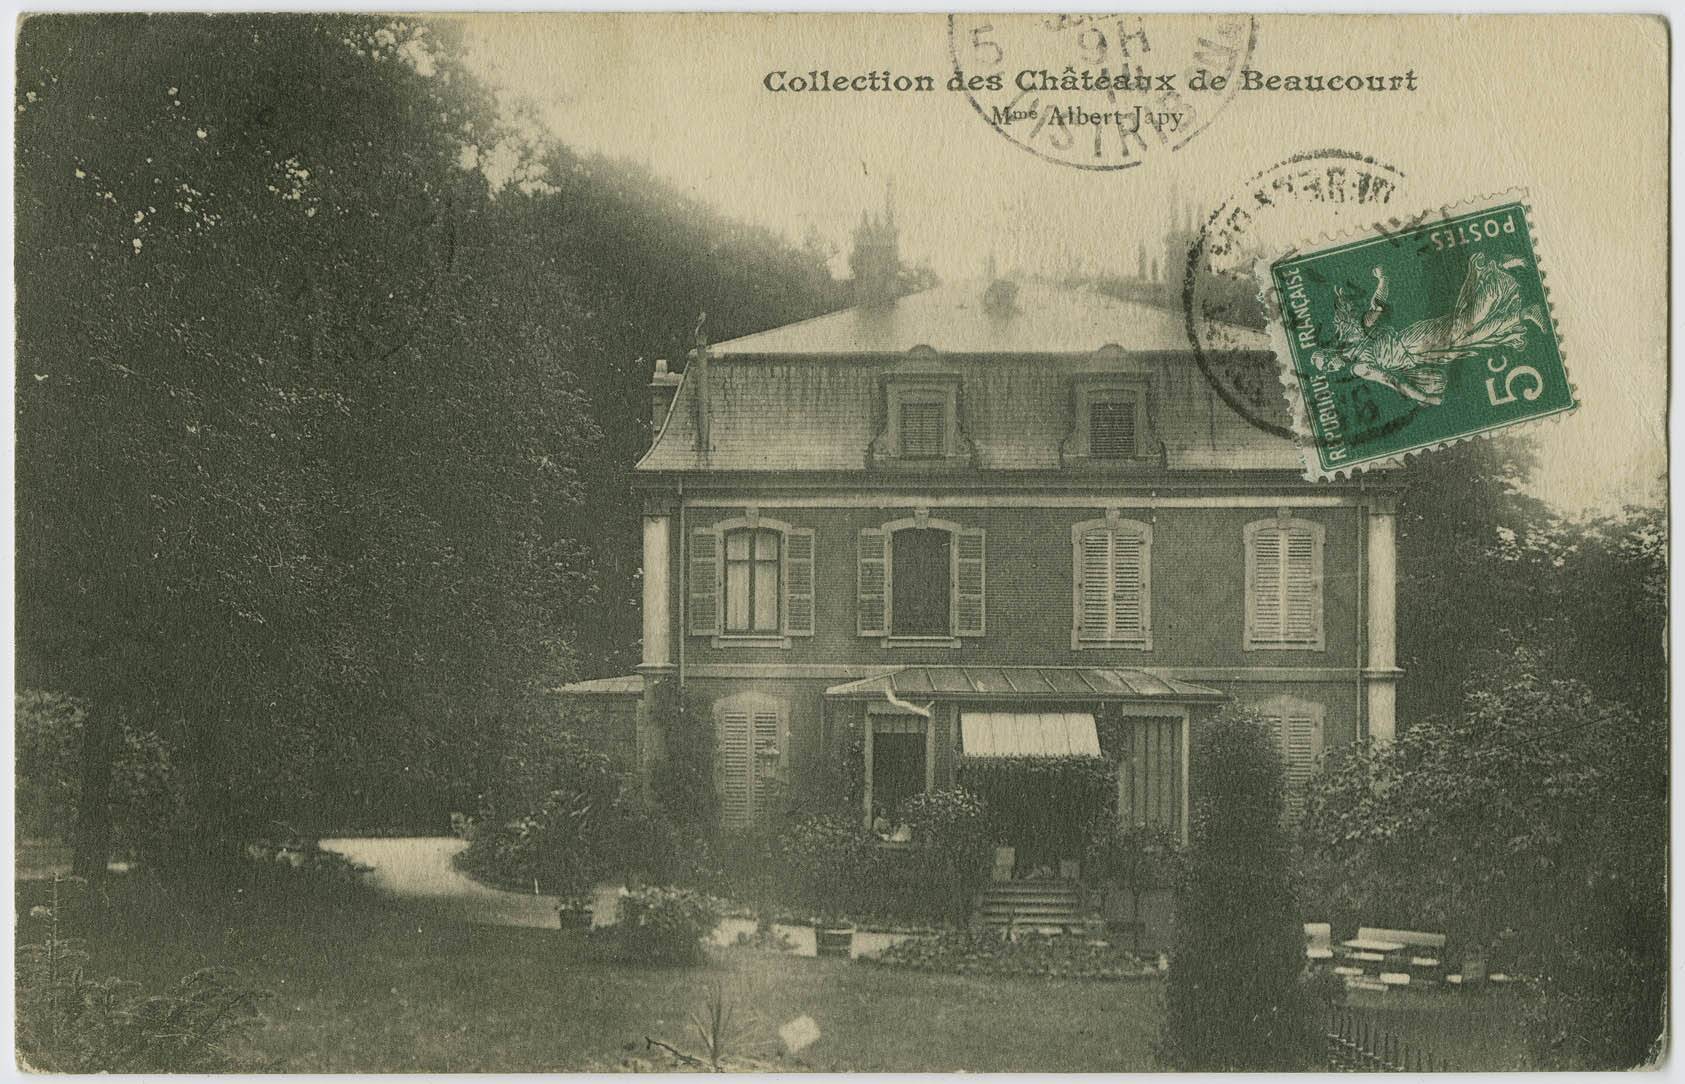 Collection des châteaux de Beaucourt, Mme Albert
                                Japy.